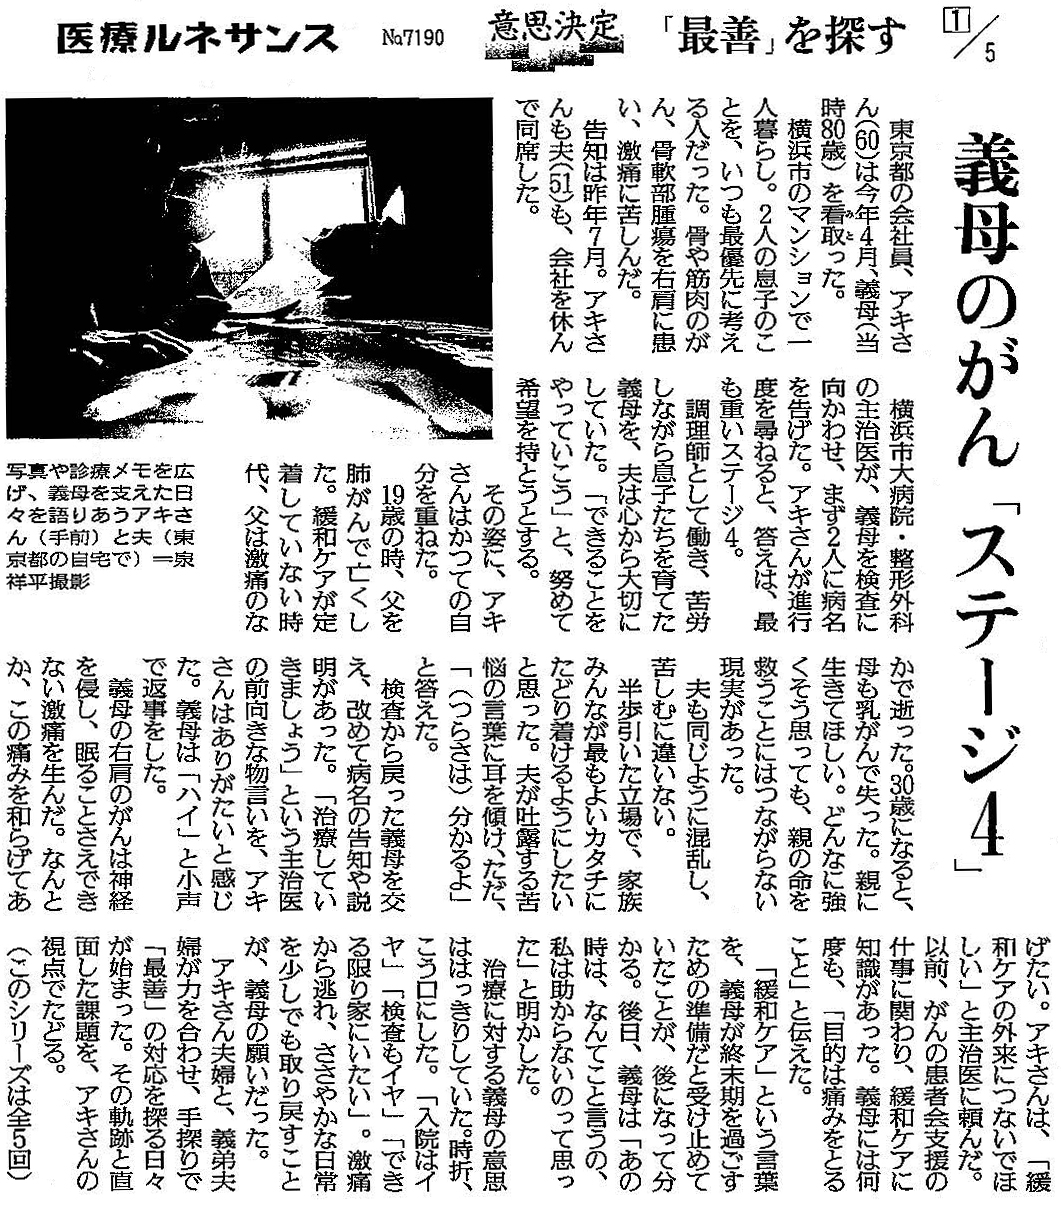 読売新聞 2019年12月23日掲載記事